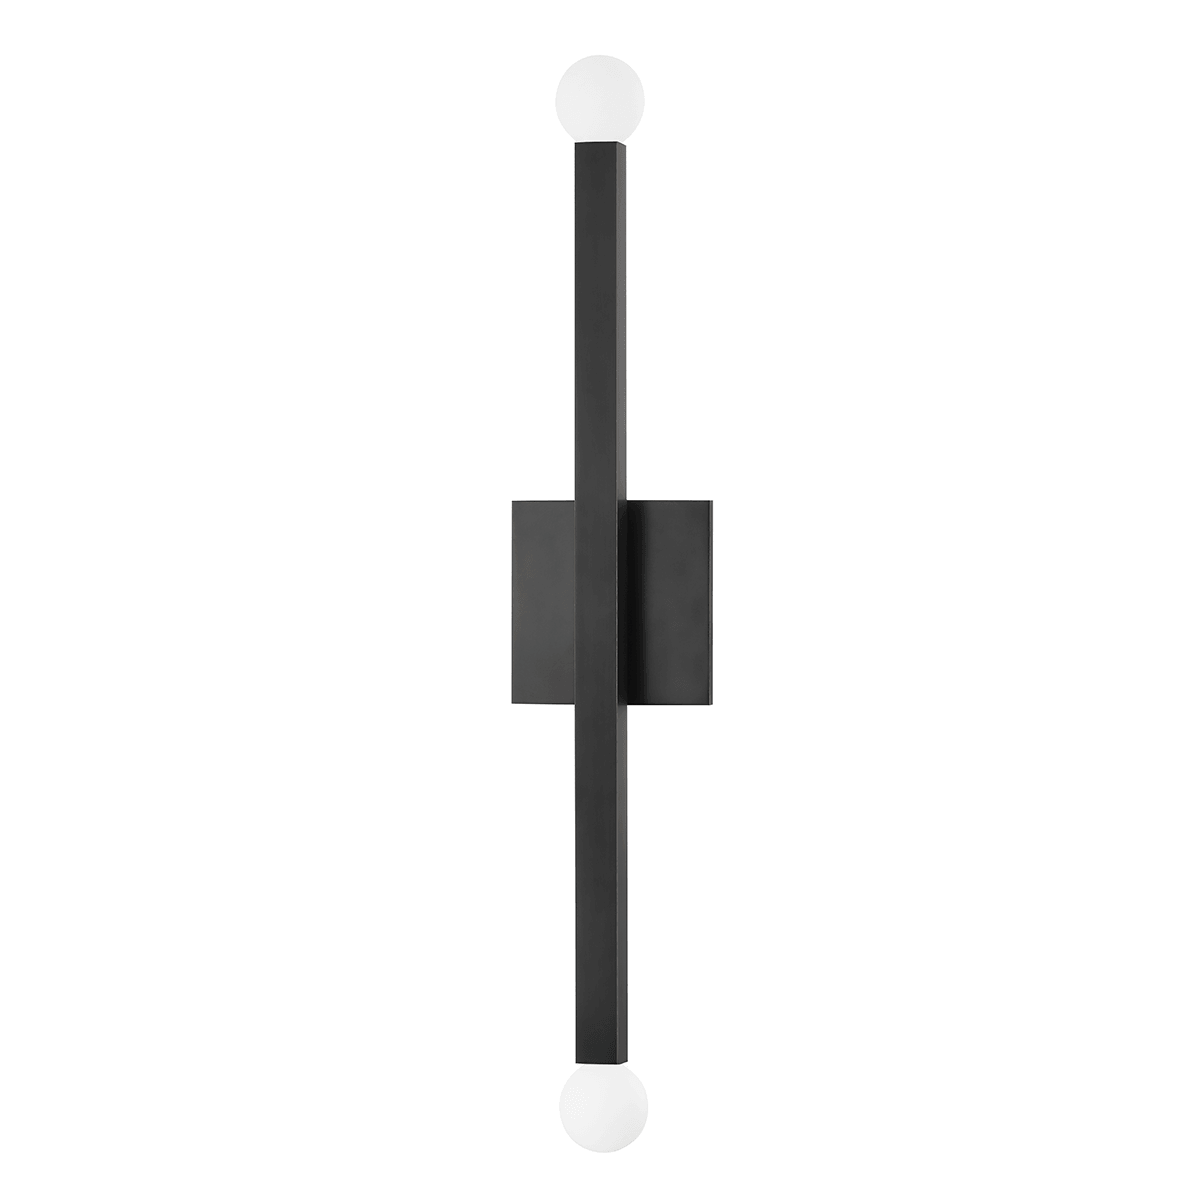 Steel Rectangular Rod 2 Light Wall Sconce - LV LIGHTING